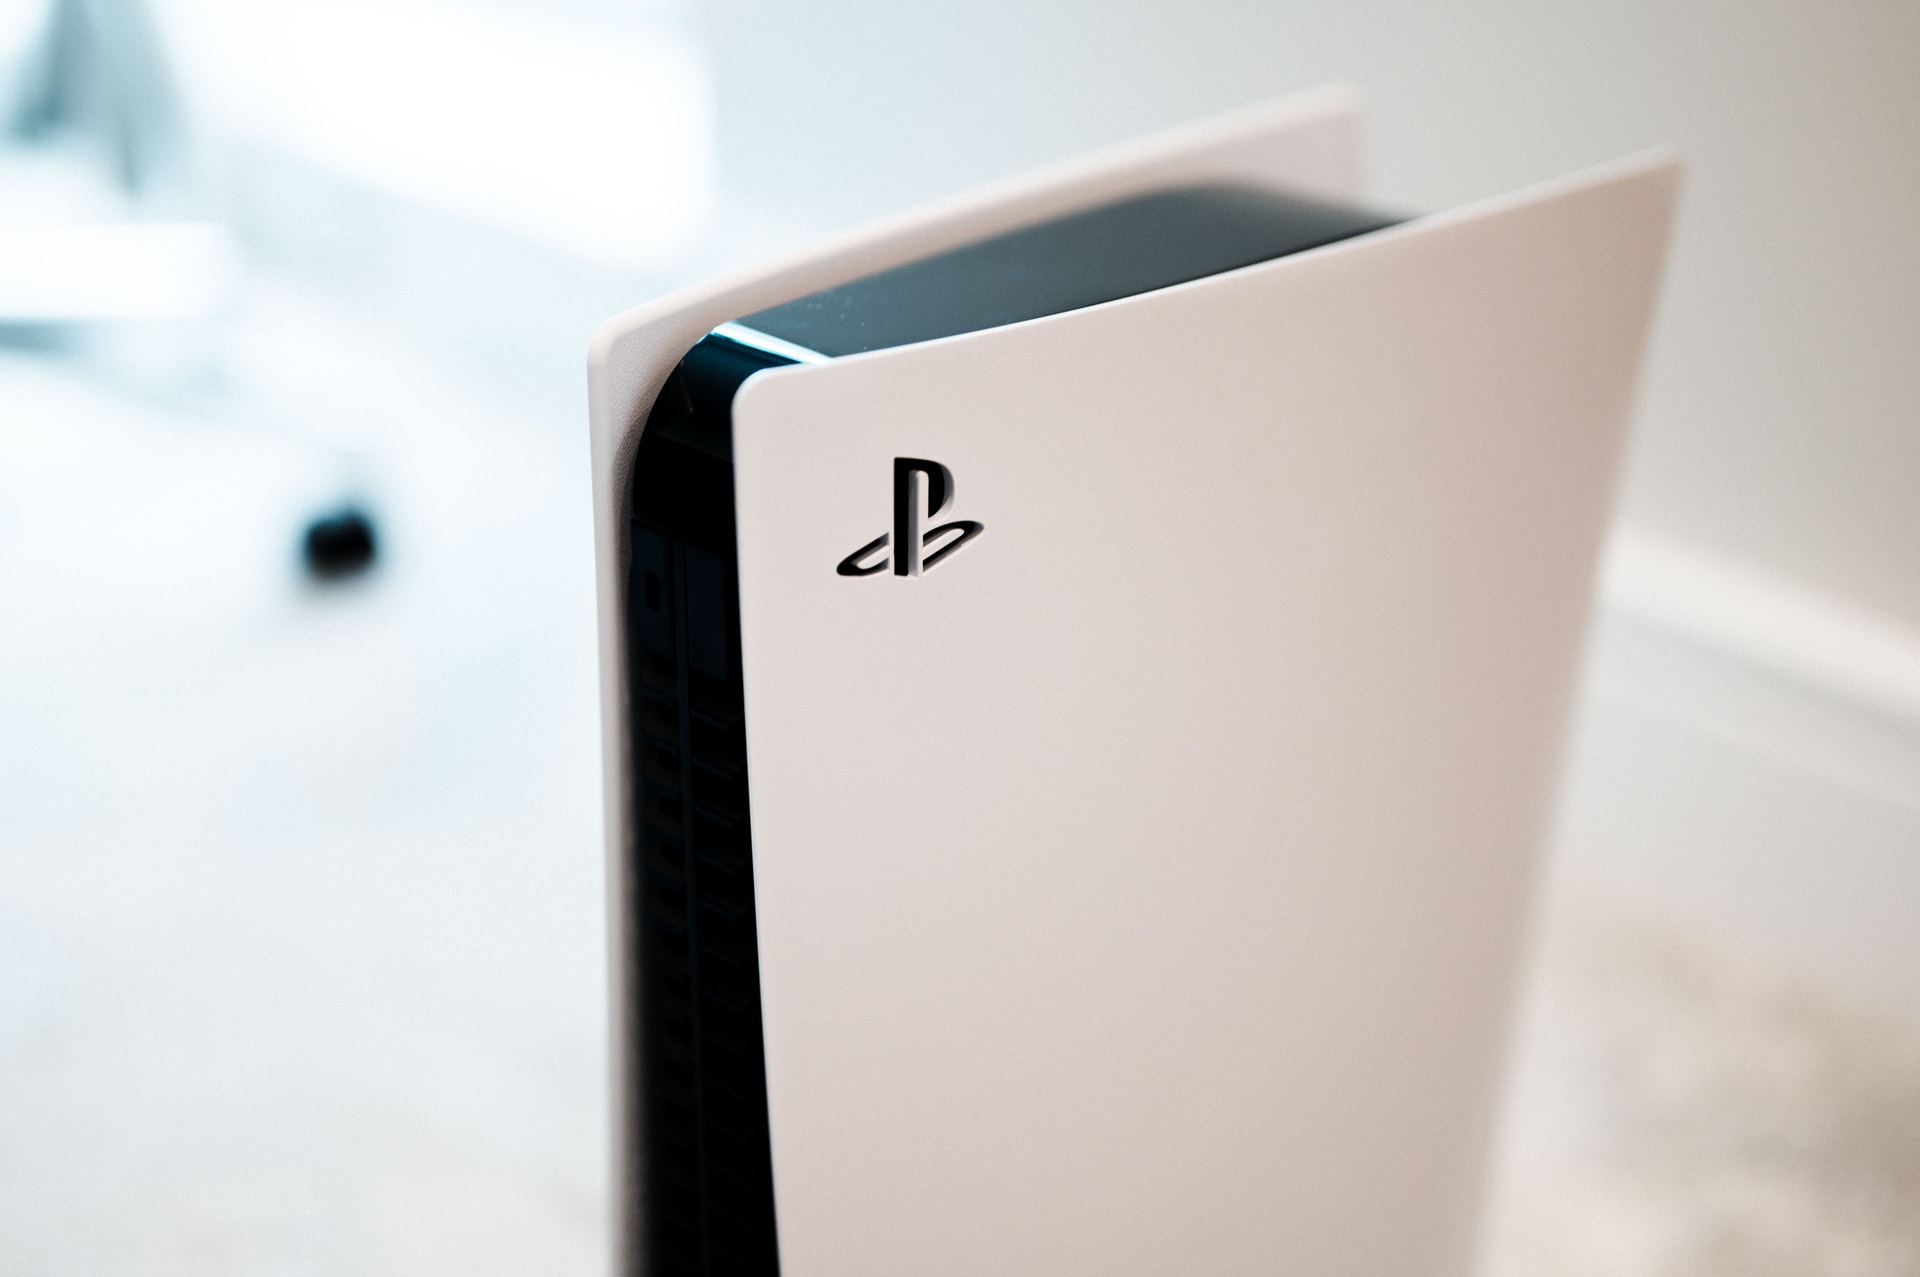 Sony planuje połączyć usługi gamingowe PlayStation Plus i PlayStation Now w jedną subskrypcję